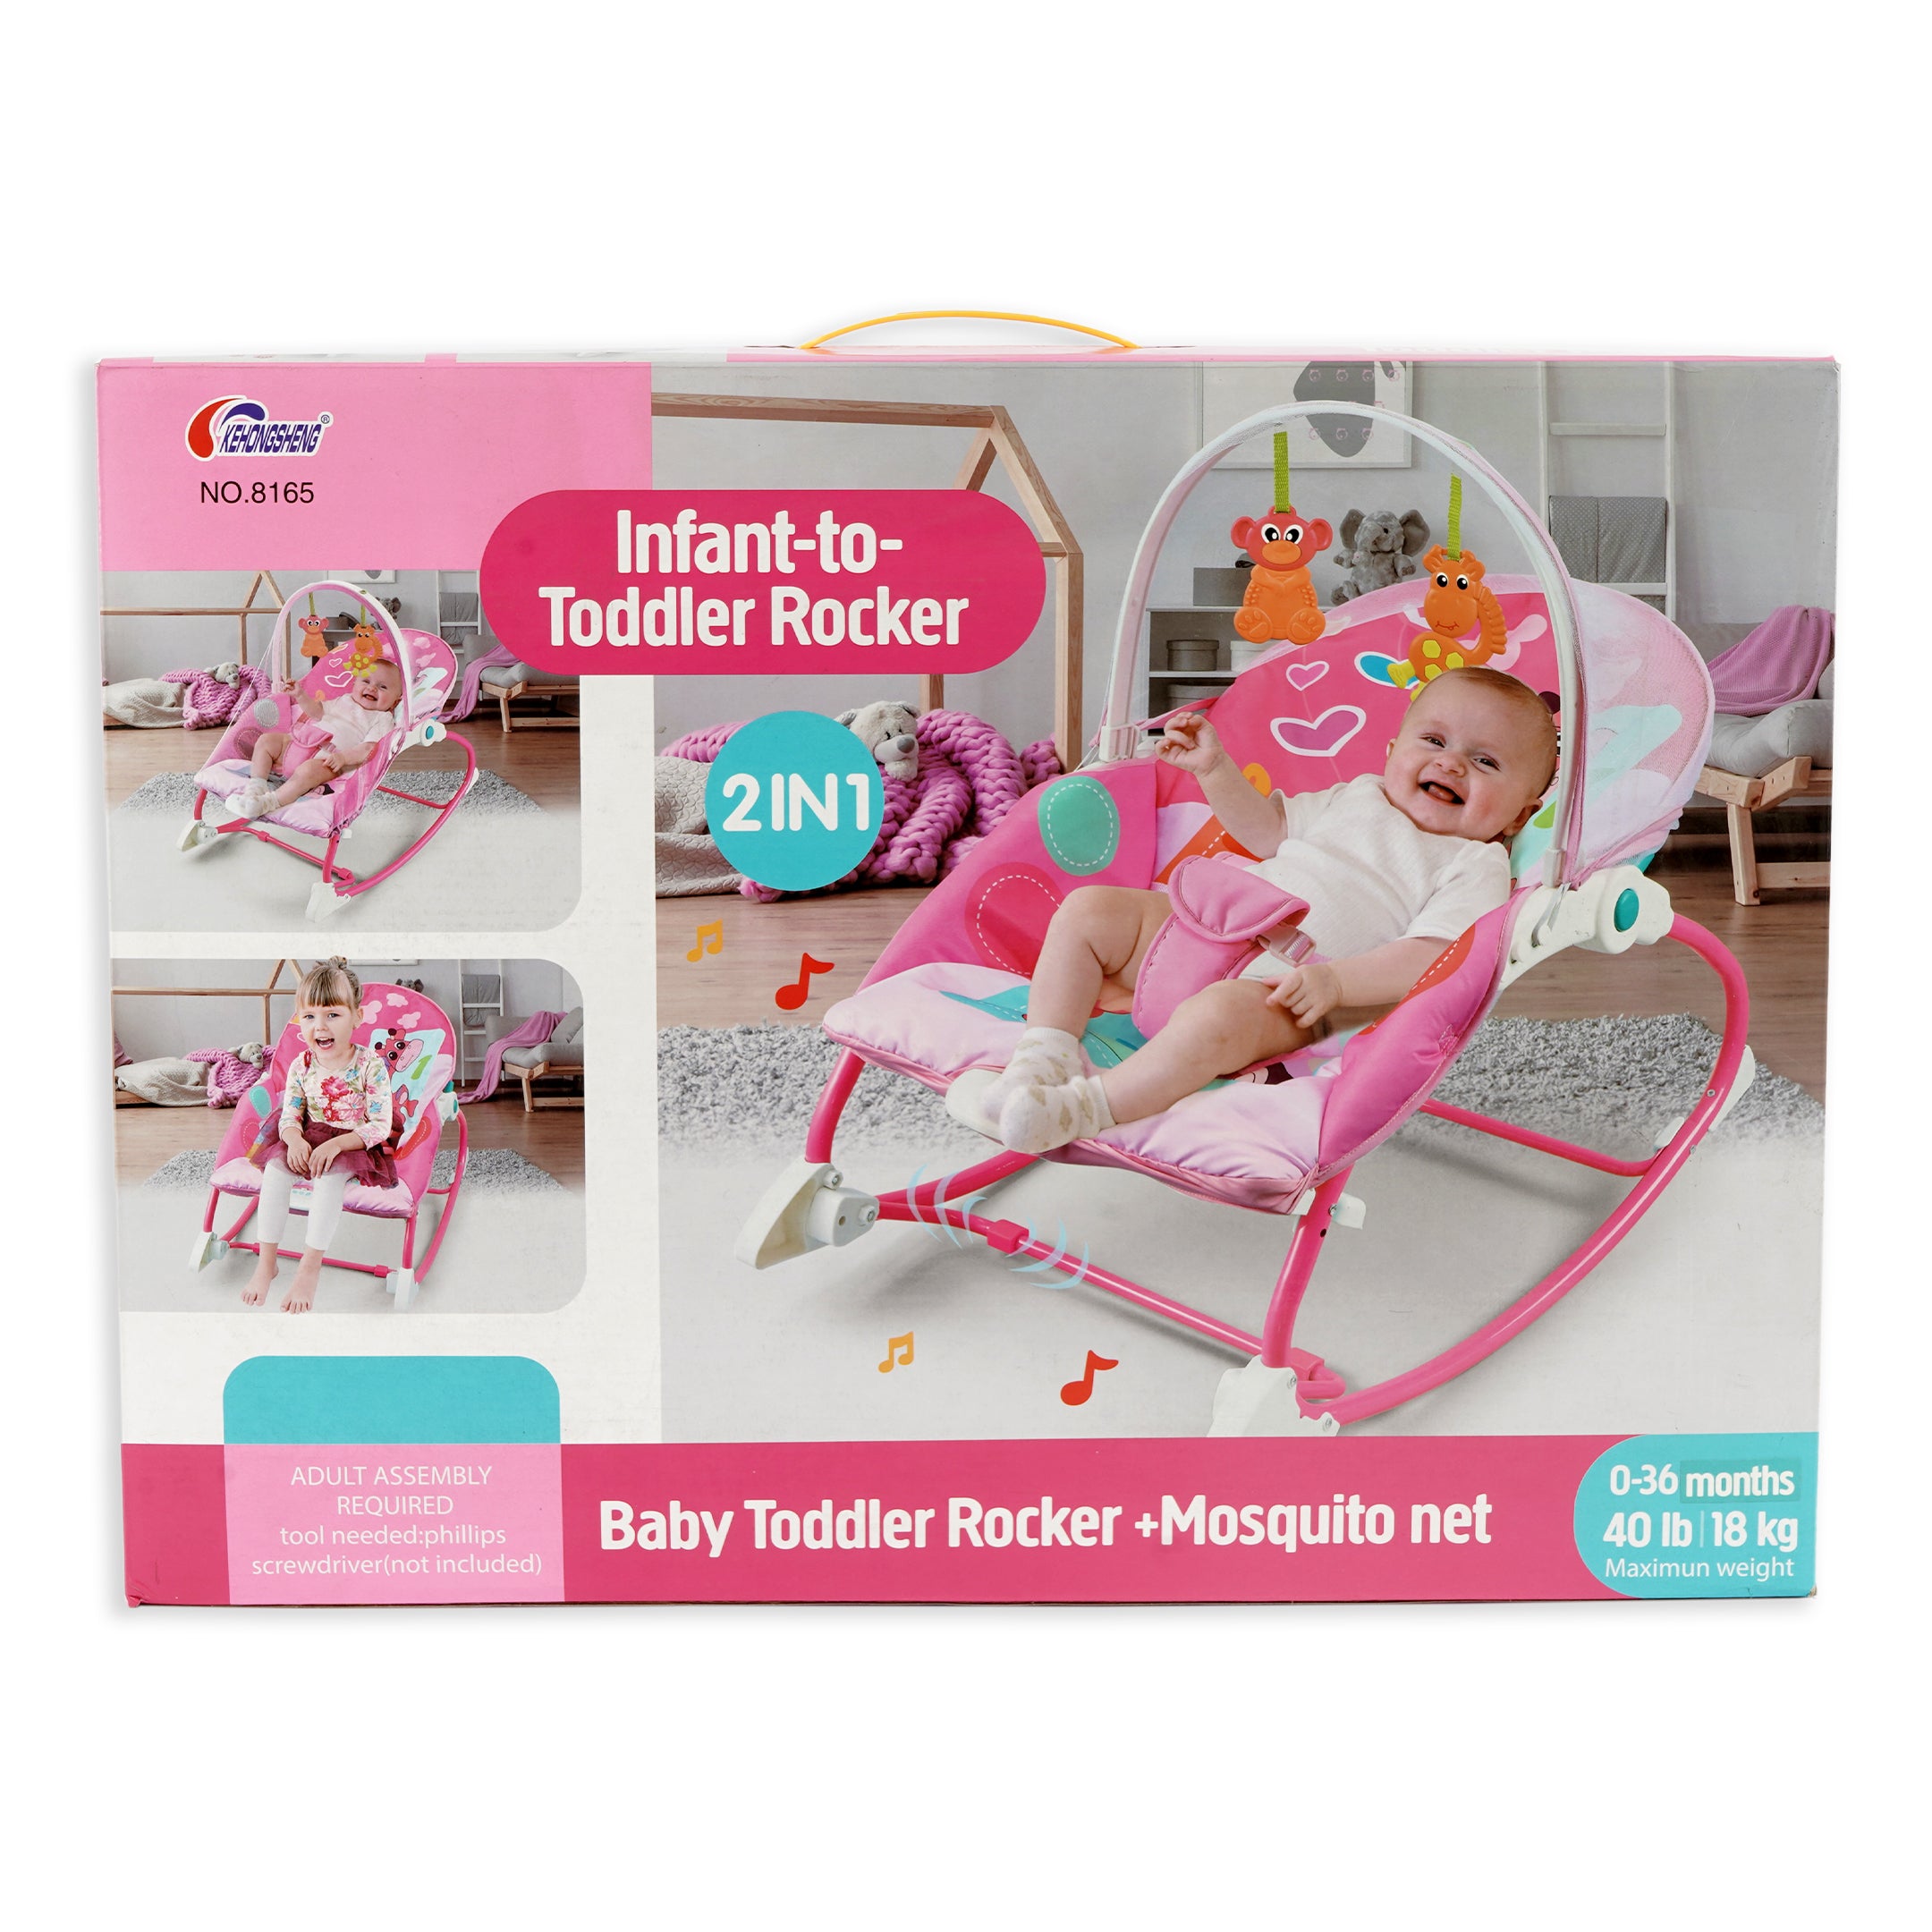 Infant to Toddler Rocker + Mosquito Net - Pink - Kehongsheng